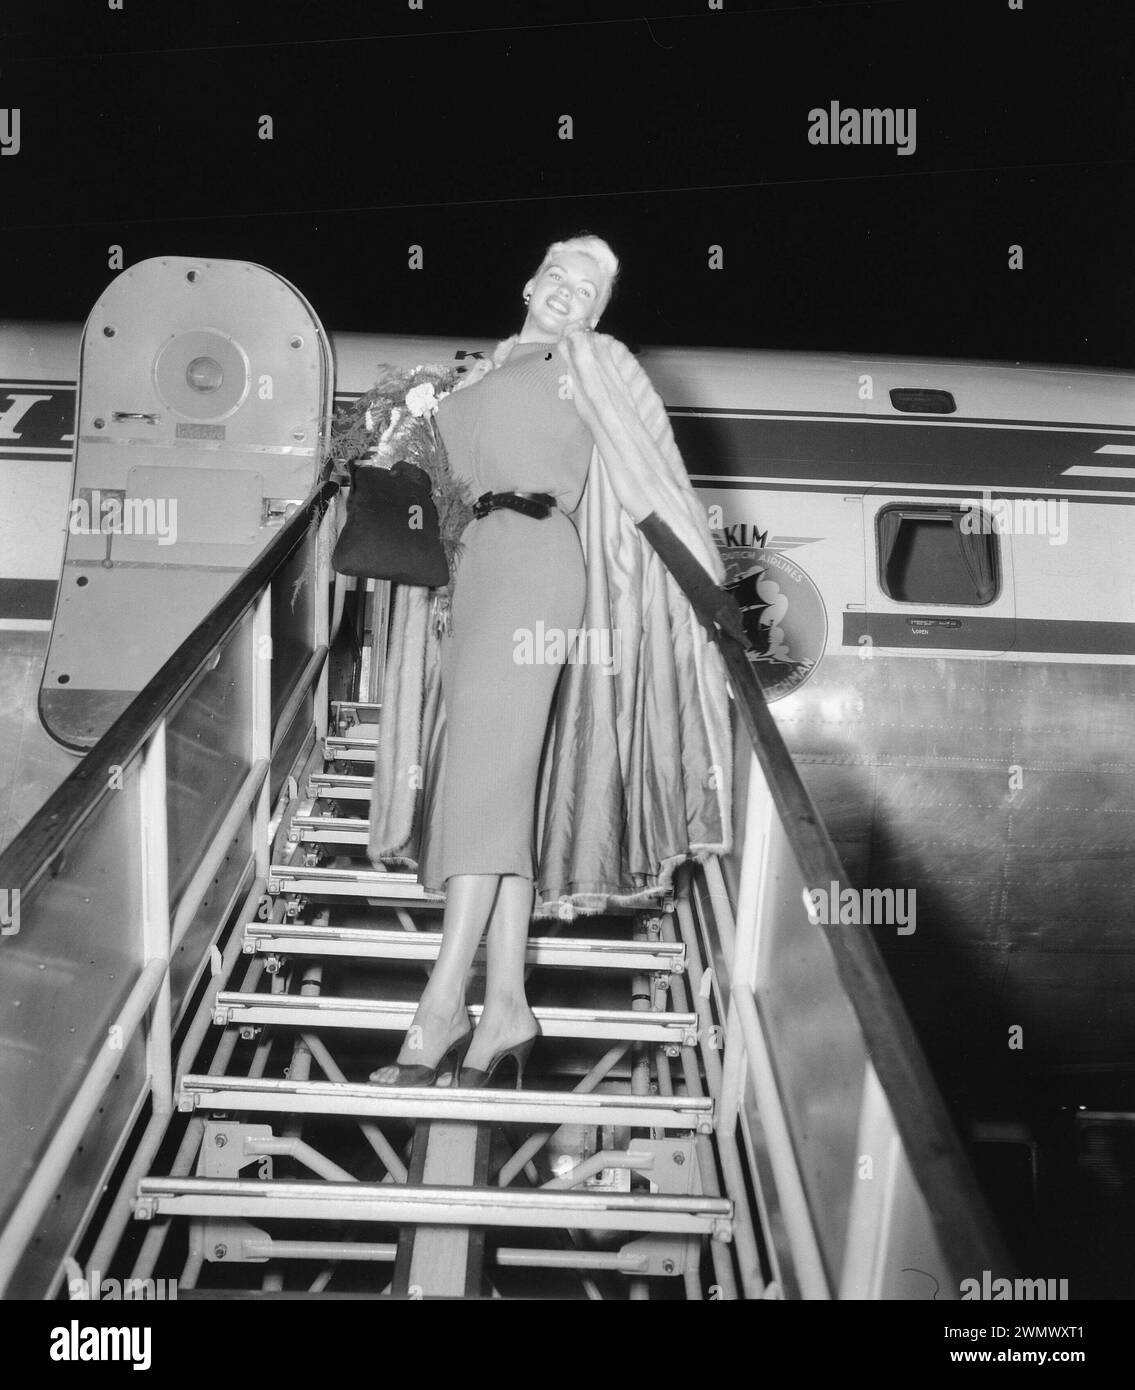 Oktober 1957. Amsterdam, Niederlande. Filmstar Jayne Mansfield kommt am Flughafen Schiphol an und läuft über die Flugzeuggangway Stockfoto